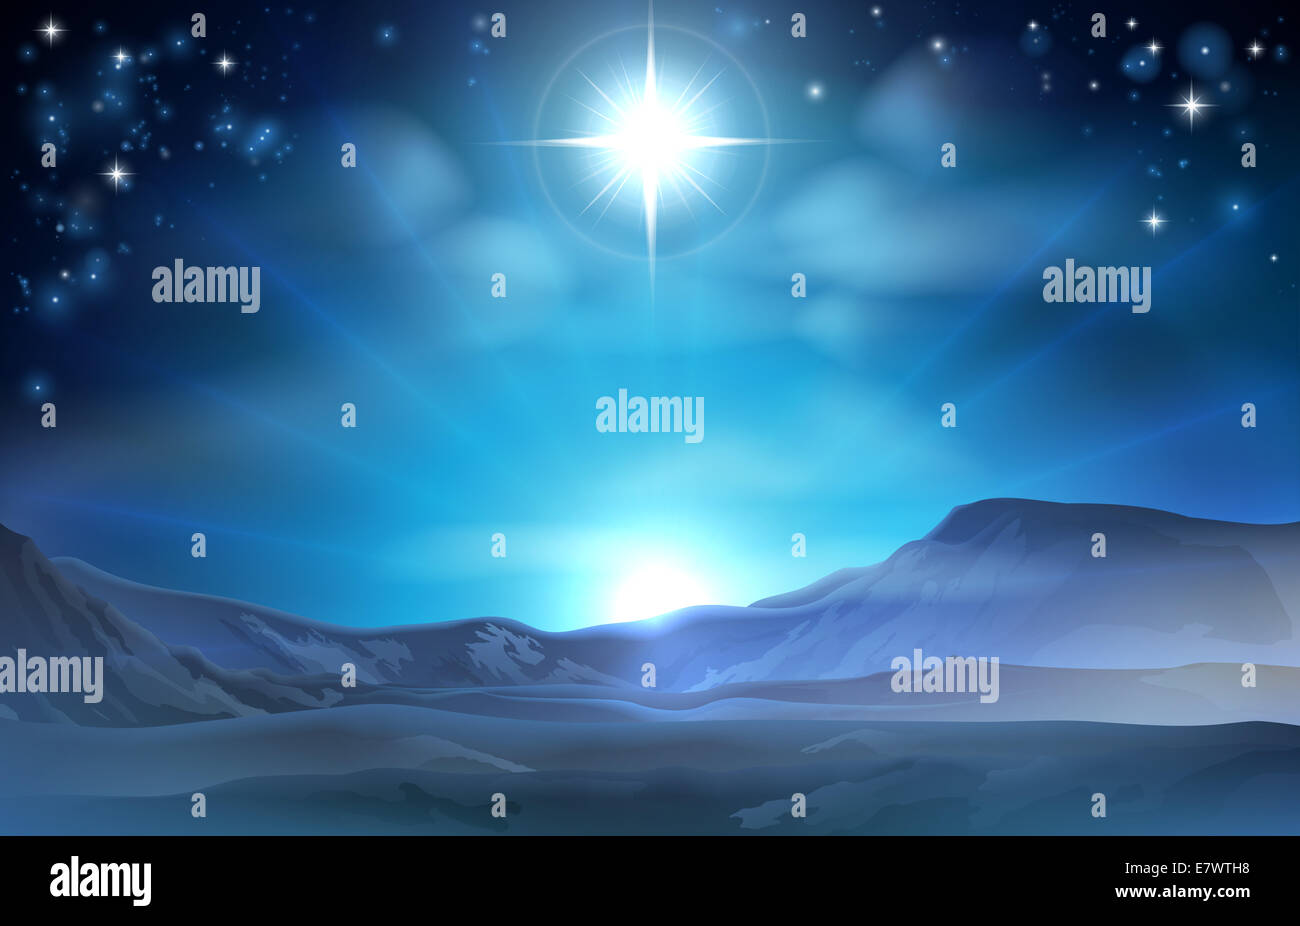 Natale stella della Natività di Betlemme illustrazione della stella nel deserto verso il modo di Gesù il luogo di nascita Foto Stock